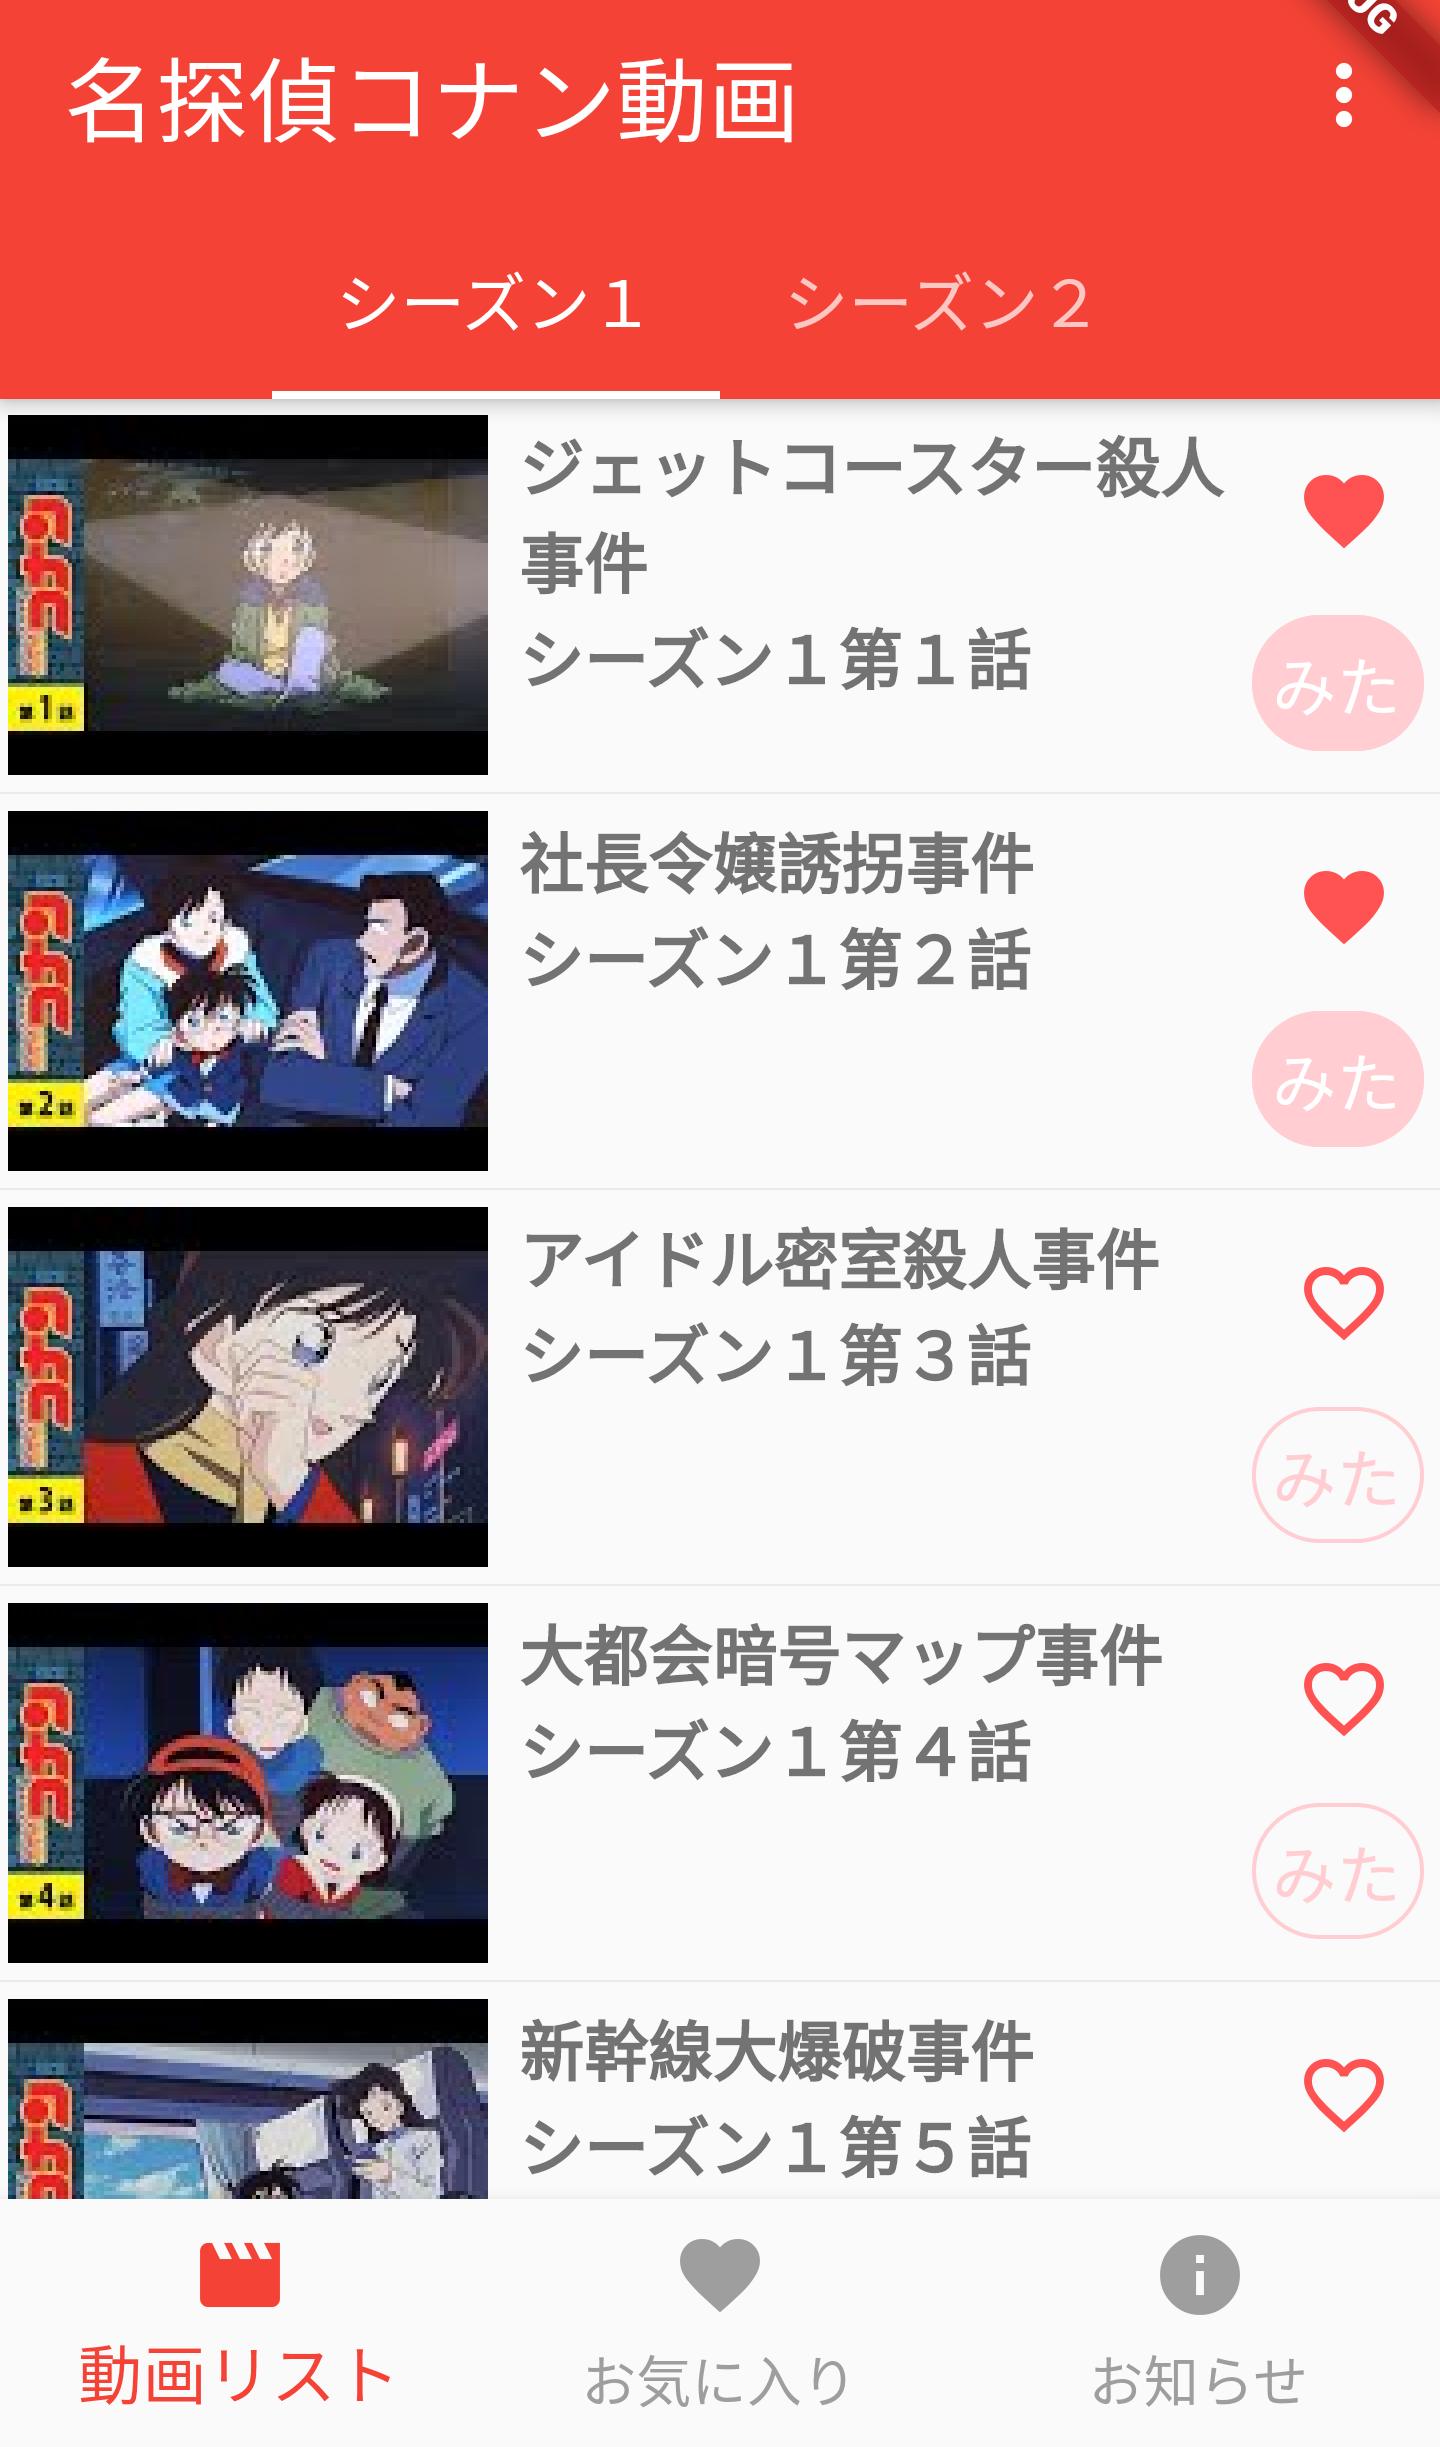 名探偵コナン無料動画 For Android Apk Download